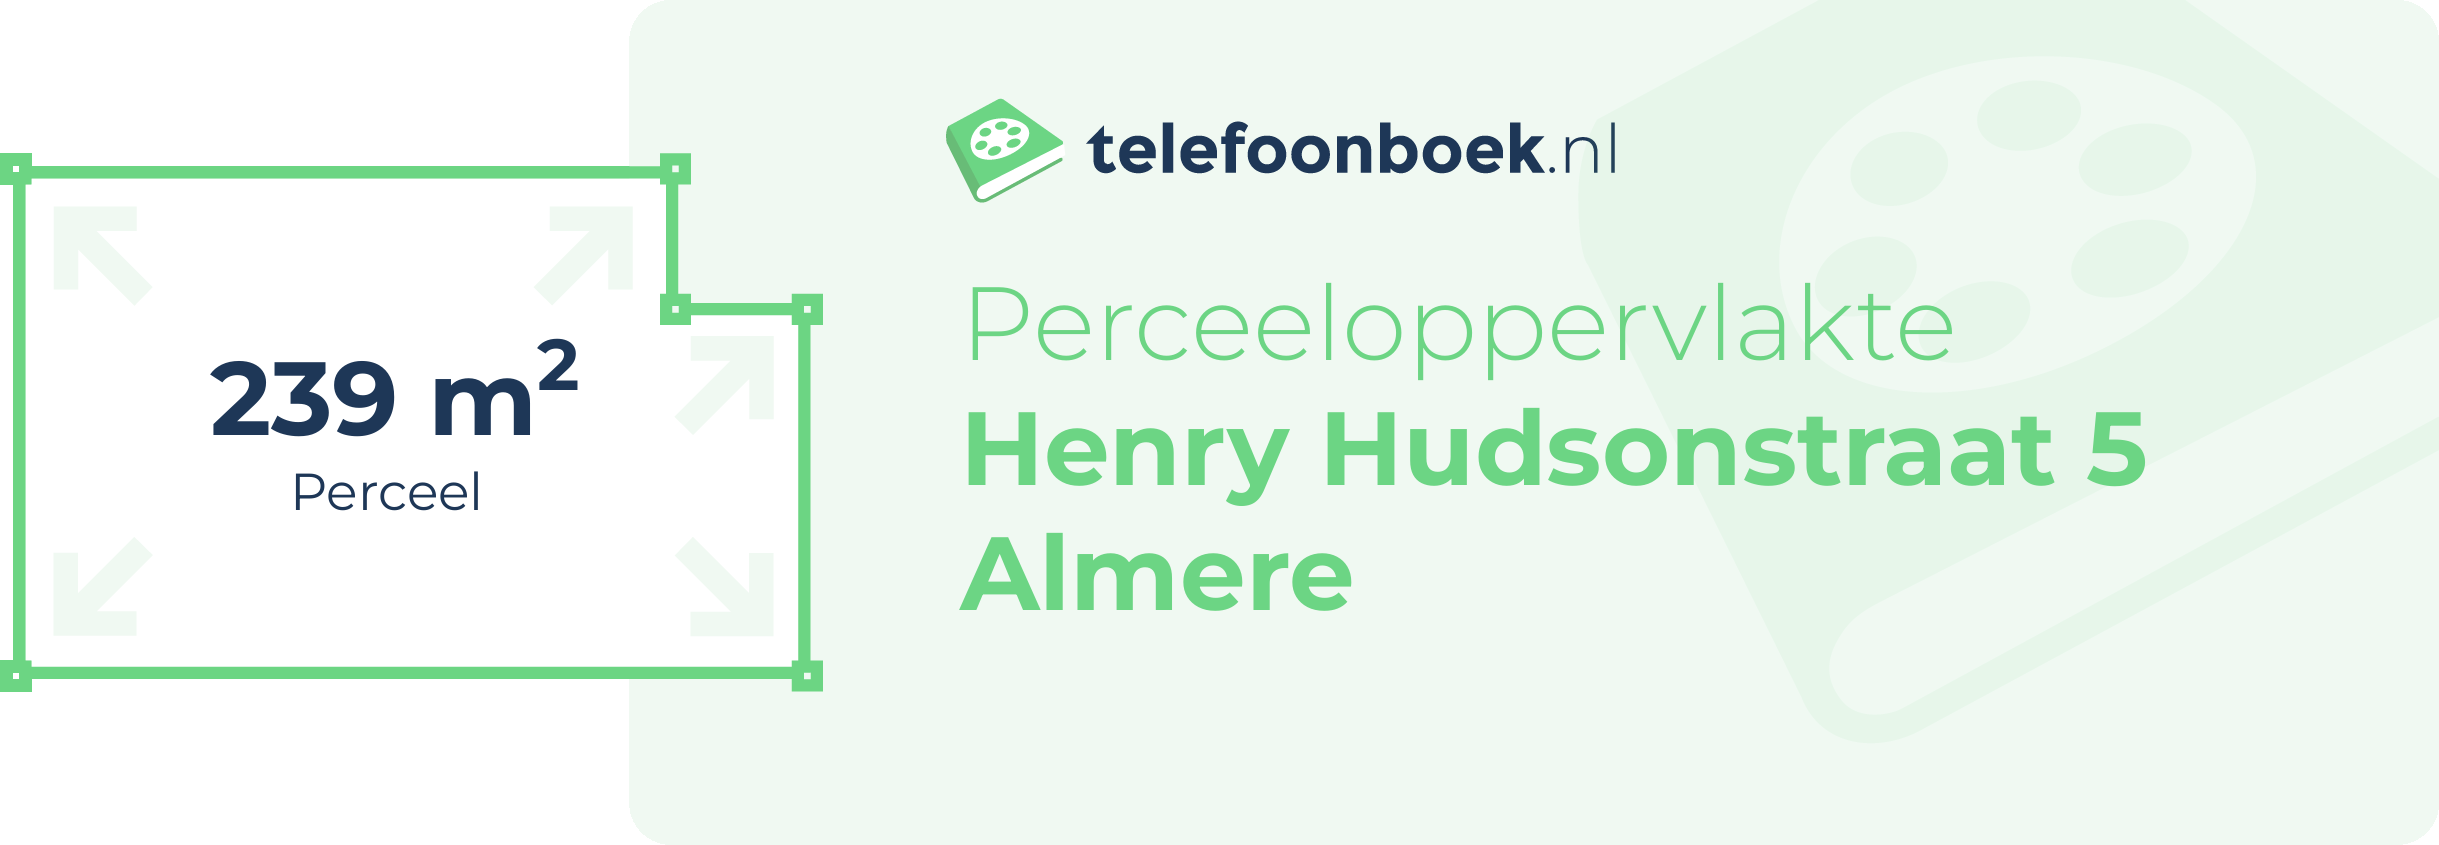 Perceeloppervlakte Henry Hudsonstraat 5 Almere